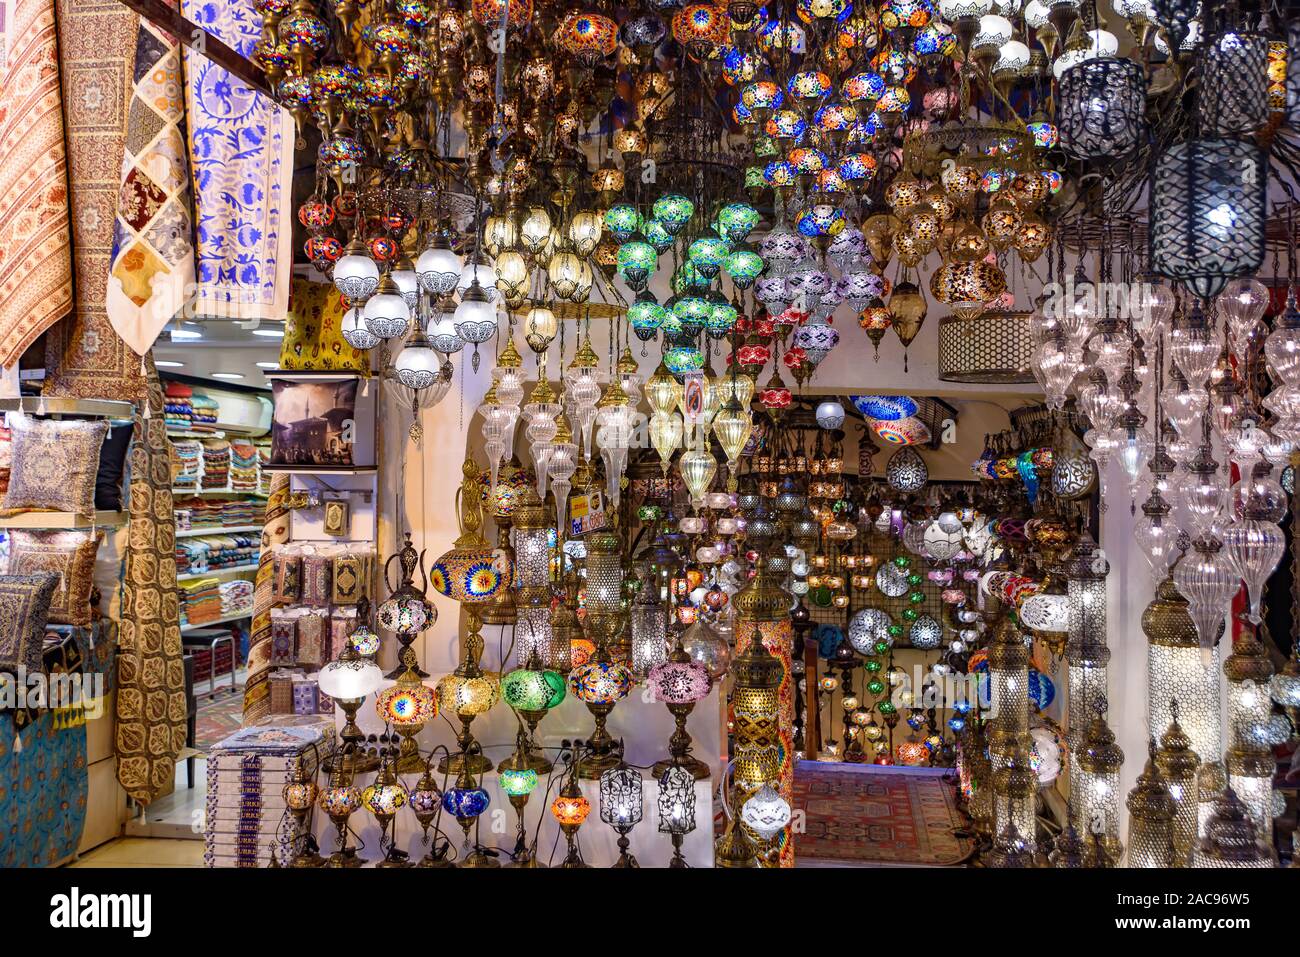 Les lampes colorées mosaïque turc ottoman / lumières dans le Grand Bazar, Istanbul, Turquie Banque D'Images